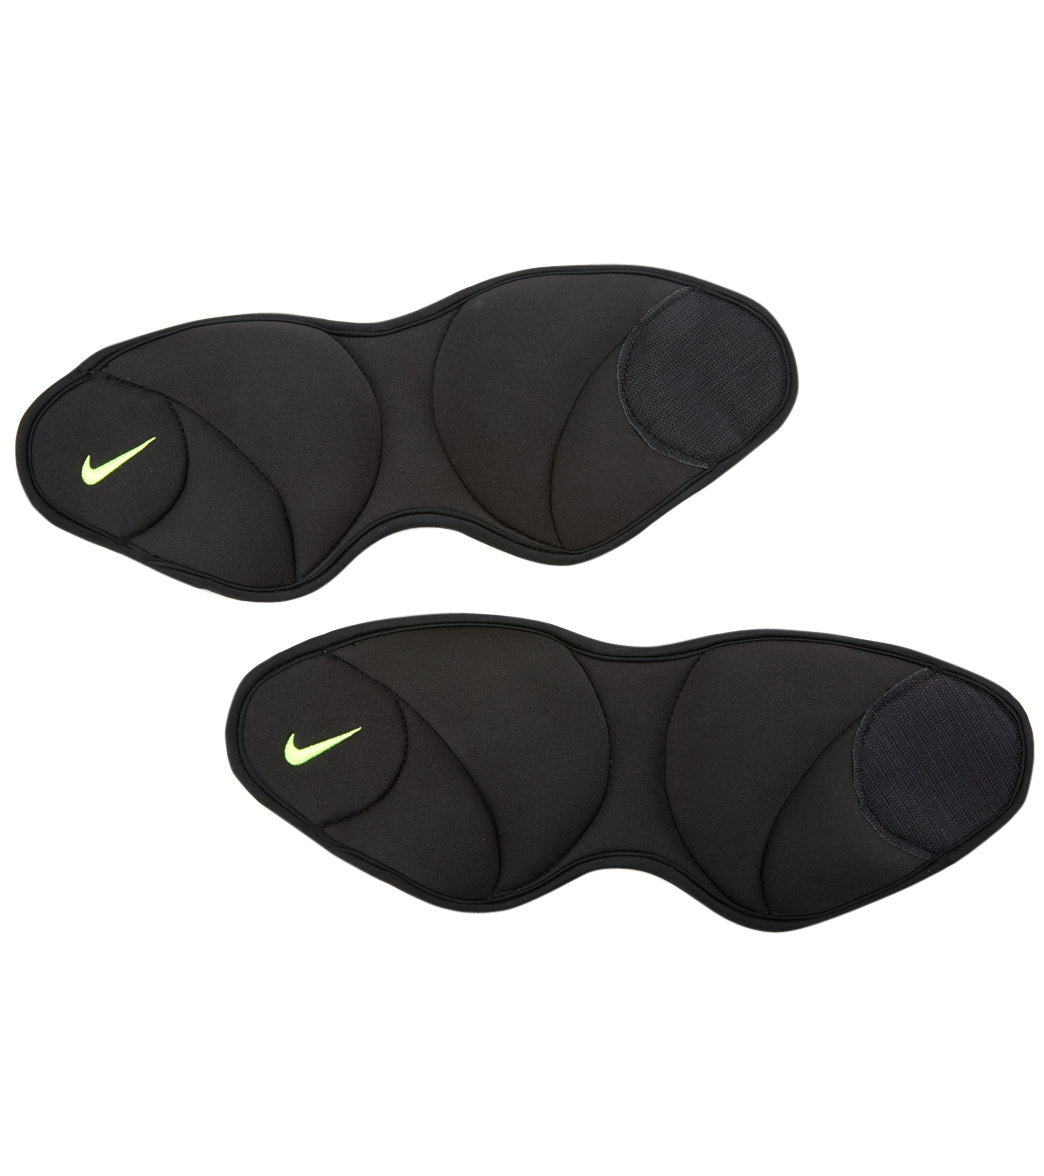 længes efter Omkreds en kreditor Nike Ankle Weights 2.5 LB at SwimOutlet.com